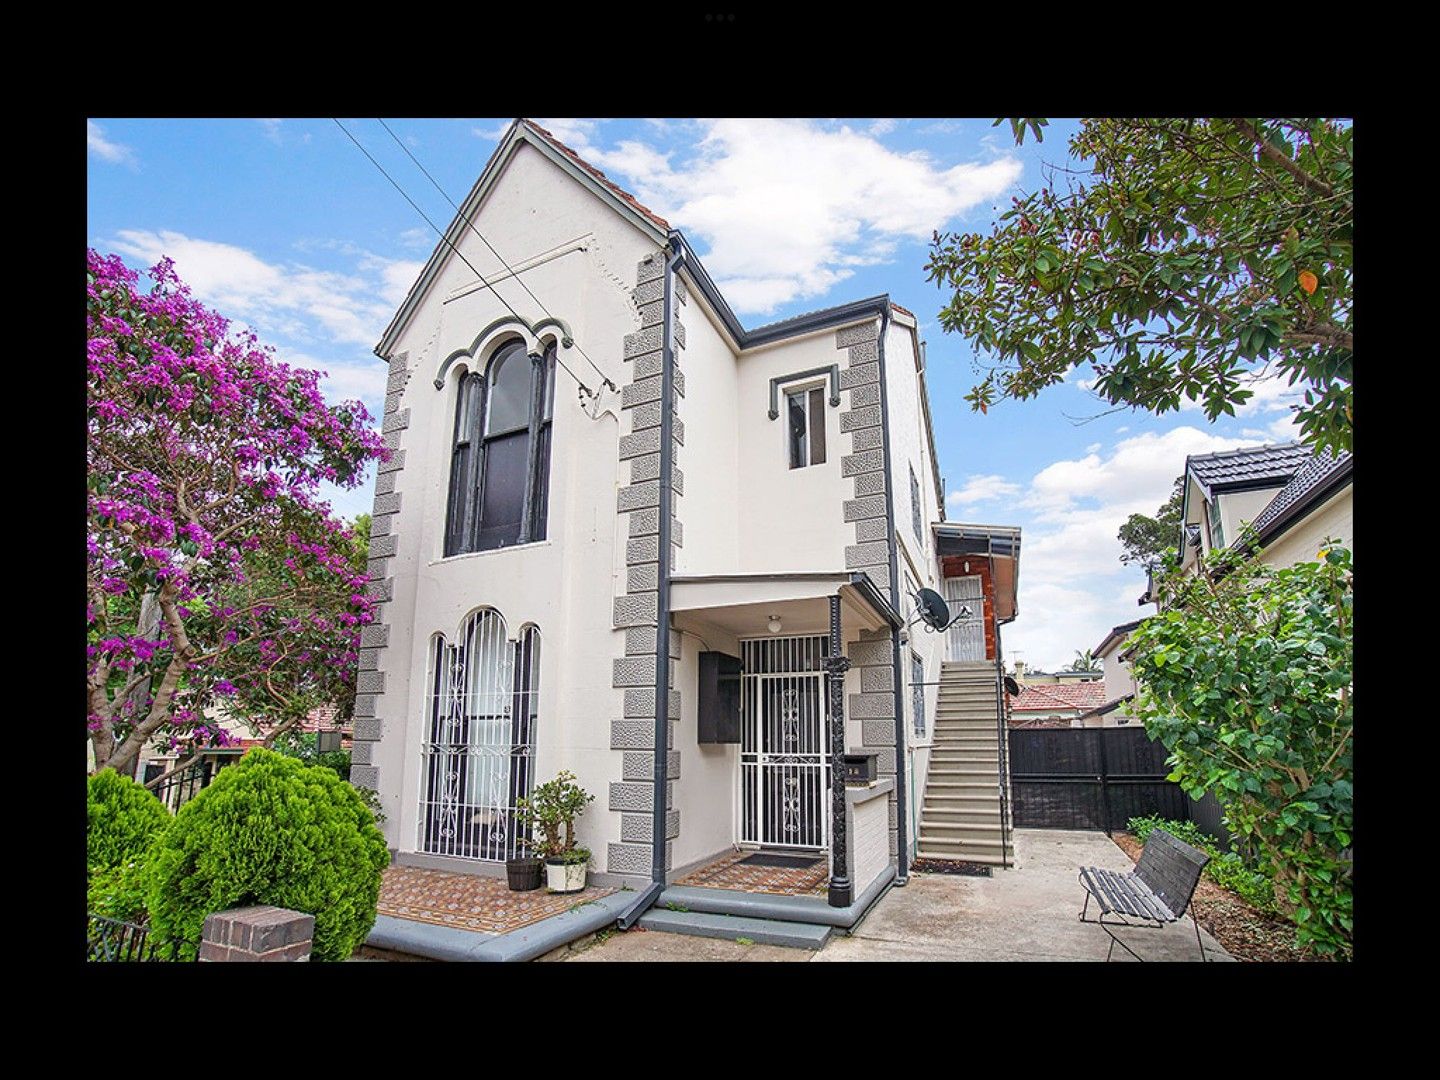 2 bedrooms Apartment / Unit / Flat in UNIT 2/18 VICTORIA STREET LEWISHAM NSW, 2049